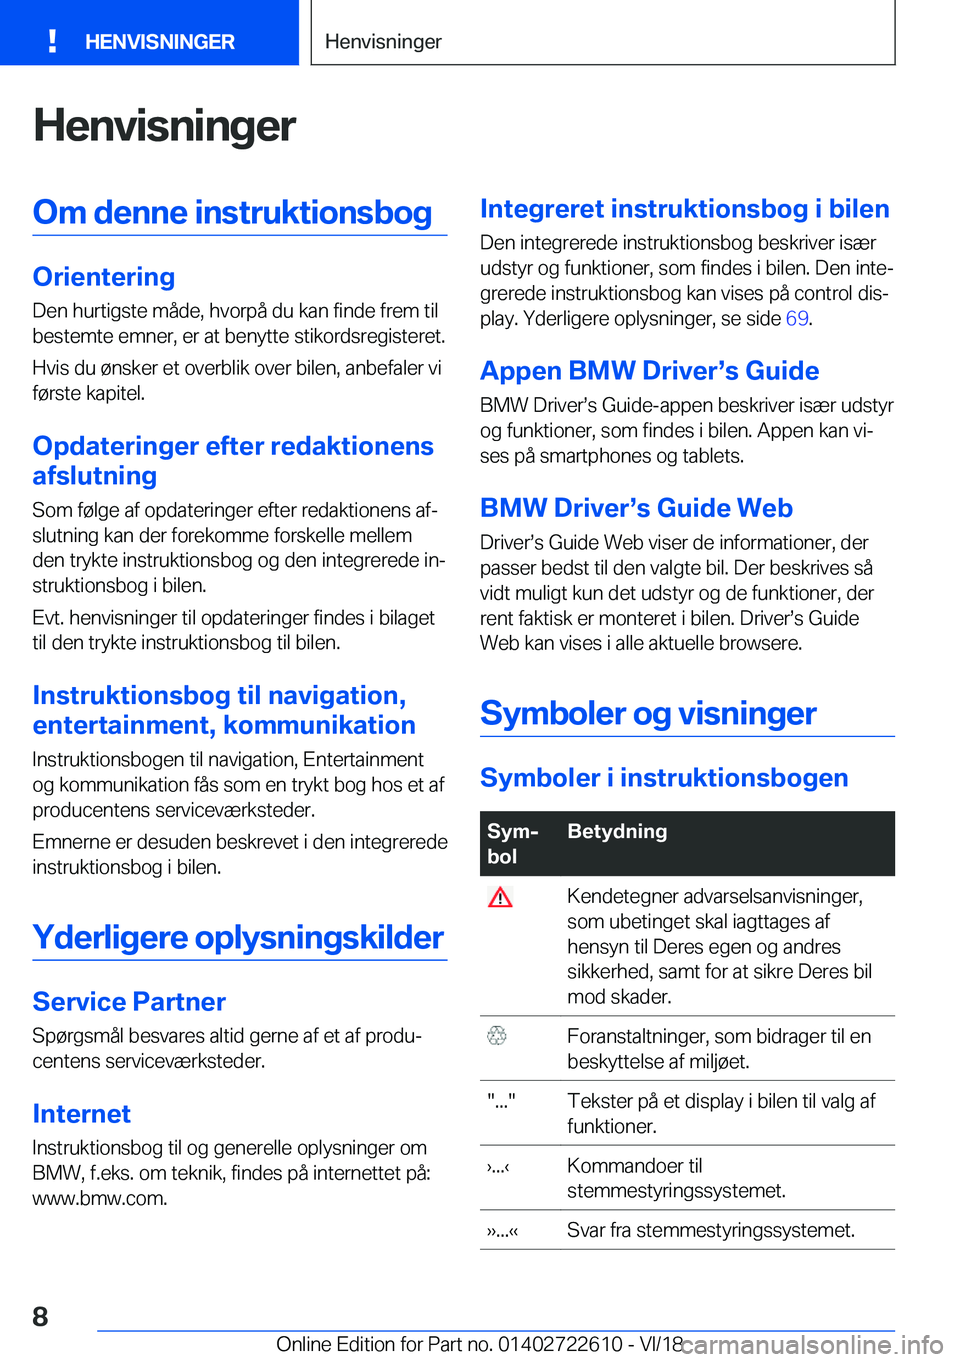 BMW 5 SERIES 2019  InstruktionsbØger (in Danish) �H�e�n�v�i�s�n�i�n�g�e�r�O�m��d�e�n�n�e��i�n�s�t�r�u�k�t�i�o�n�s�b�o�g
�O�r�i�e�n�t�e�r�i�n�g�D�e�n��h�u�r�t�i�g�s�t�e��m�å�d�e�,��h�v�o�r�p�å��d�u��k�a�n��f�i�n�d�e��f�r�e�m��t�i�l
�b�e�s